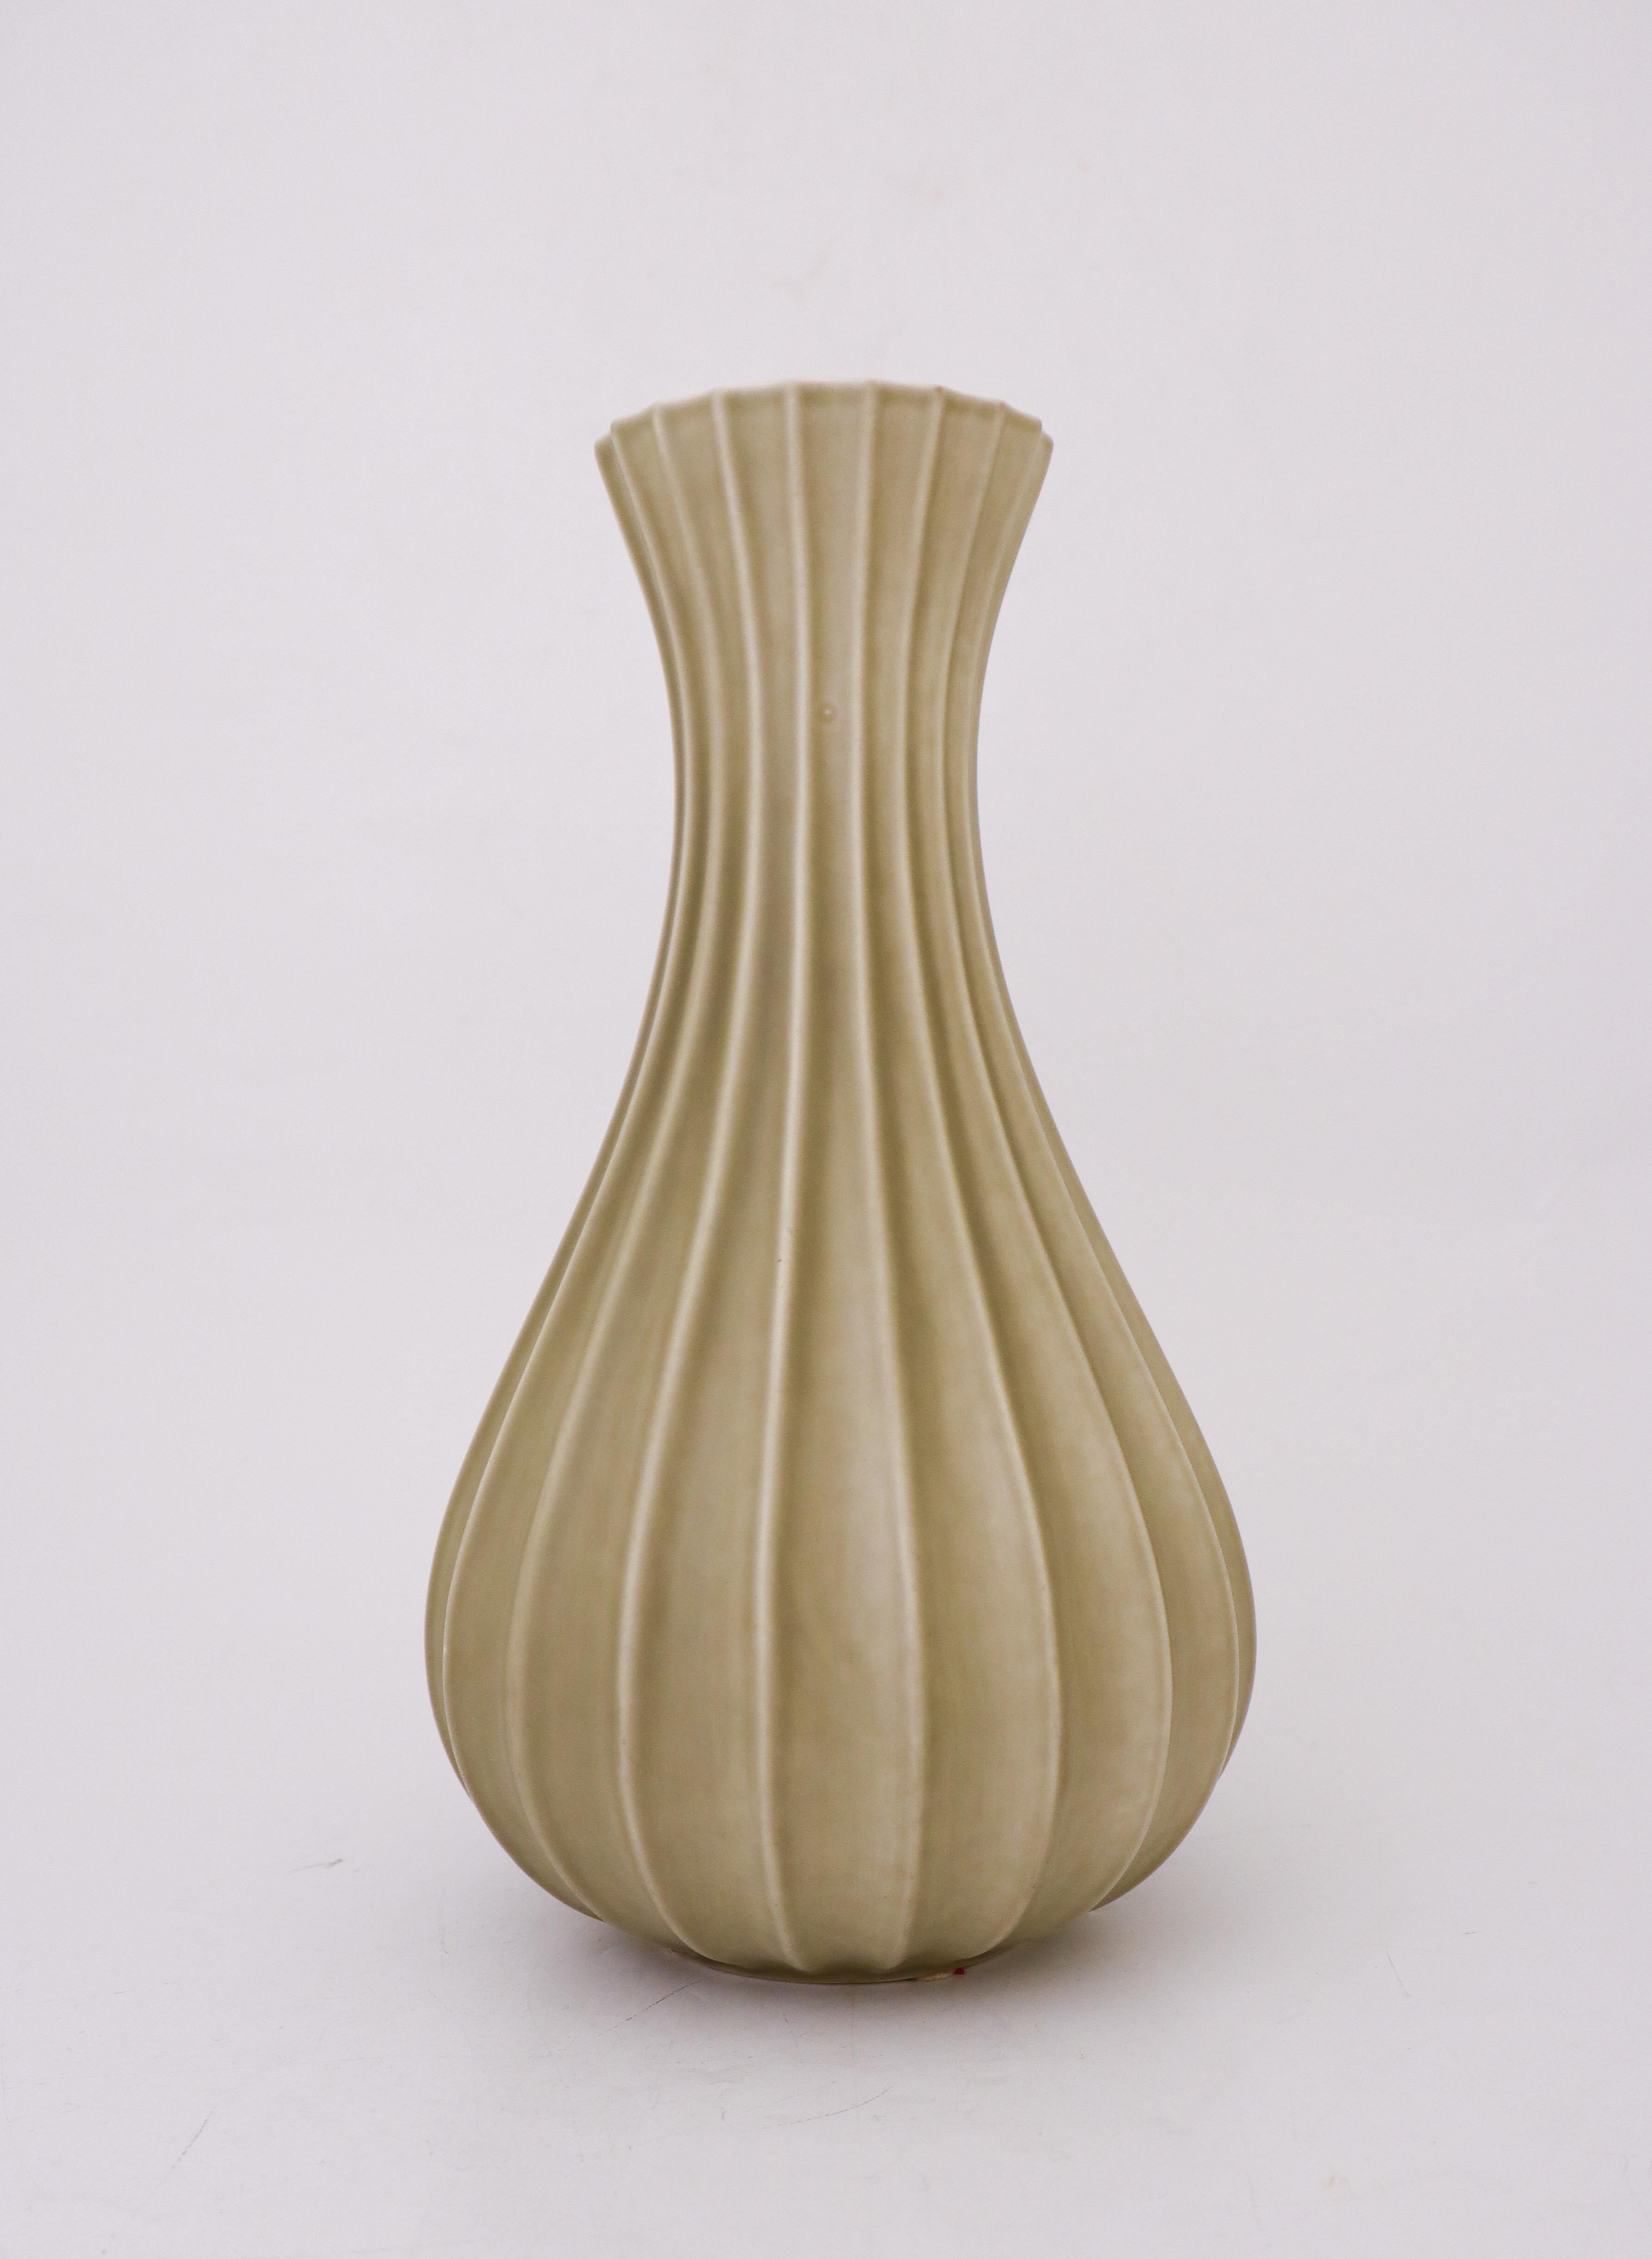 Un joli vase vert olive/gris conçu par Pia Rönndahl chez Rörstrand dans les années 1980. Le vase mesure 23 cm de haut et est en excellent état, à l'exception de quelques petites marques. Il est marqué comme sur la photo et est de 2ème qualité. 

